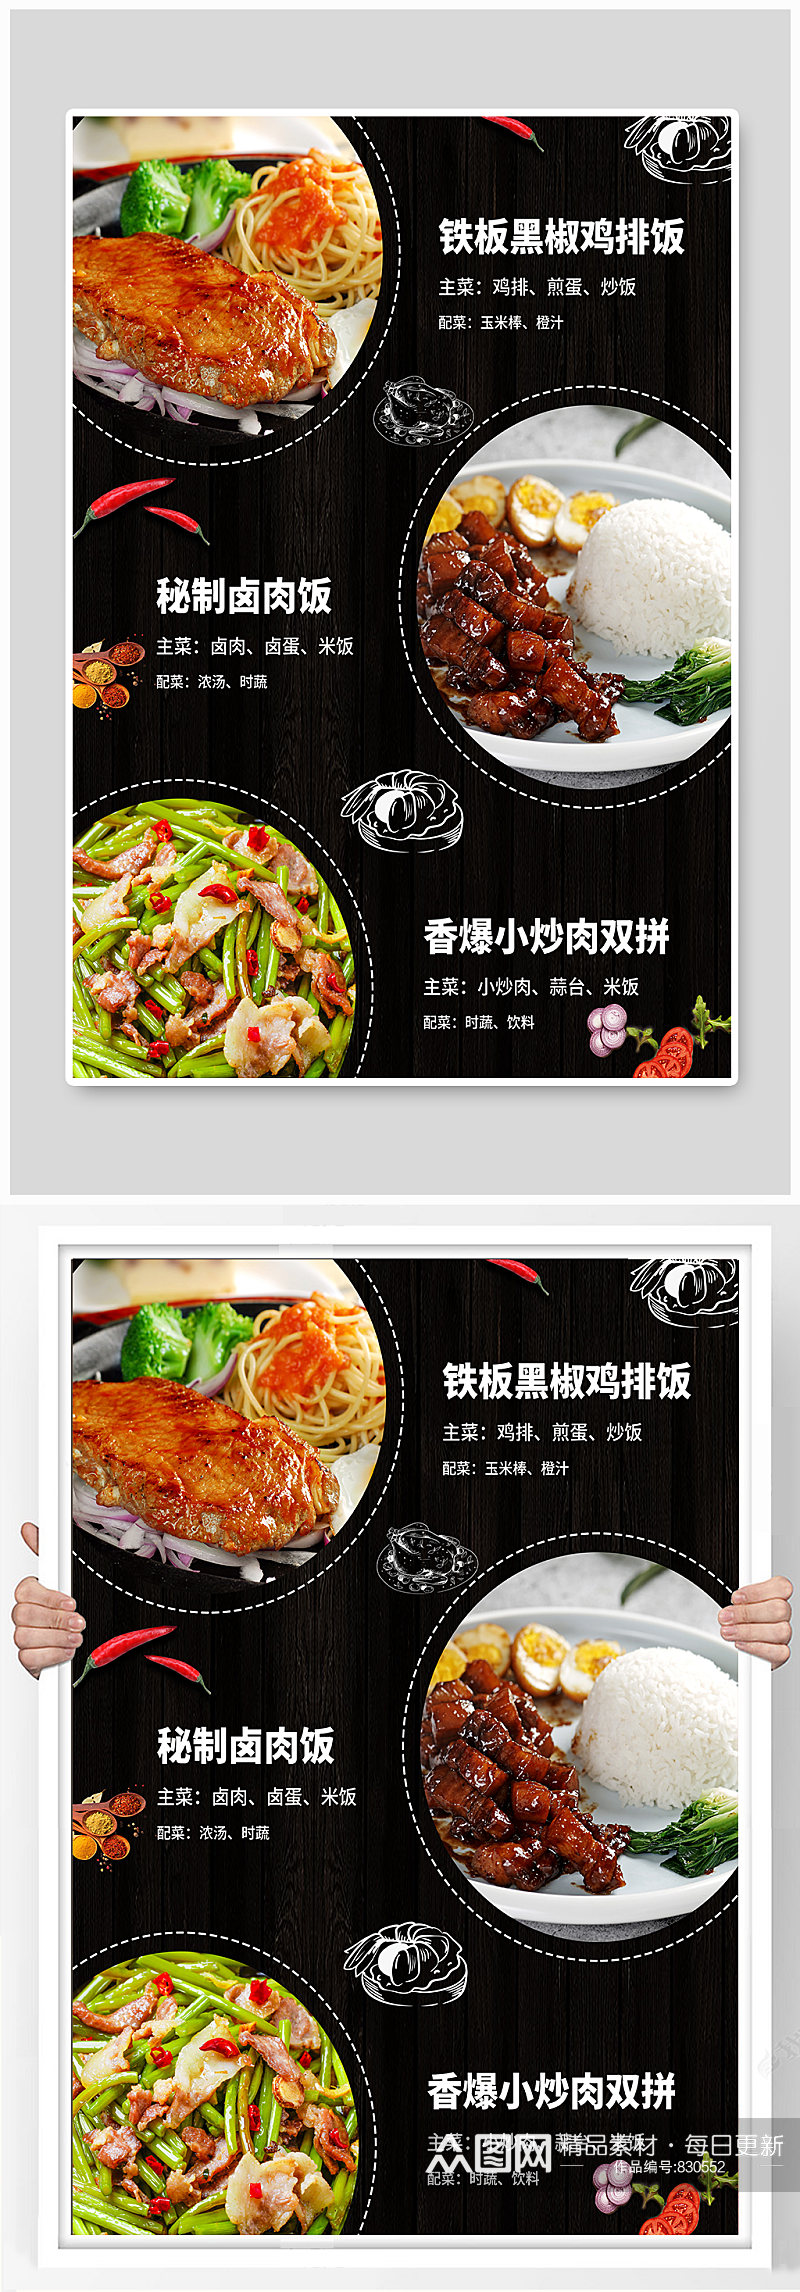 中餐厅菜品套餐海报素材